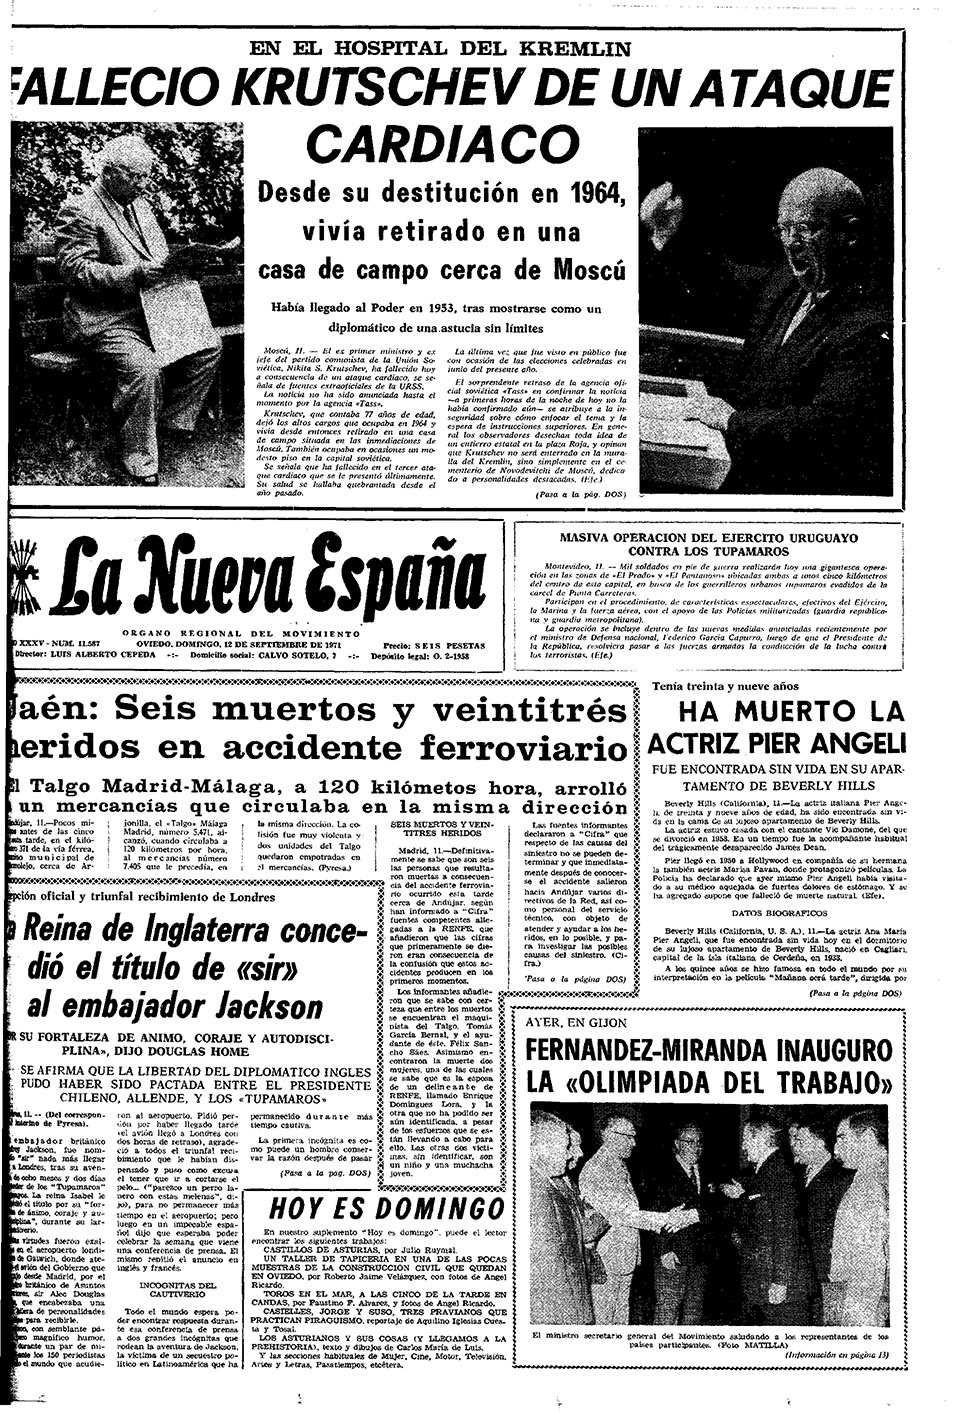 Portada del Domingo, 12 de Septiembre de 1971